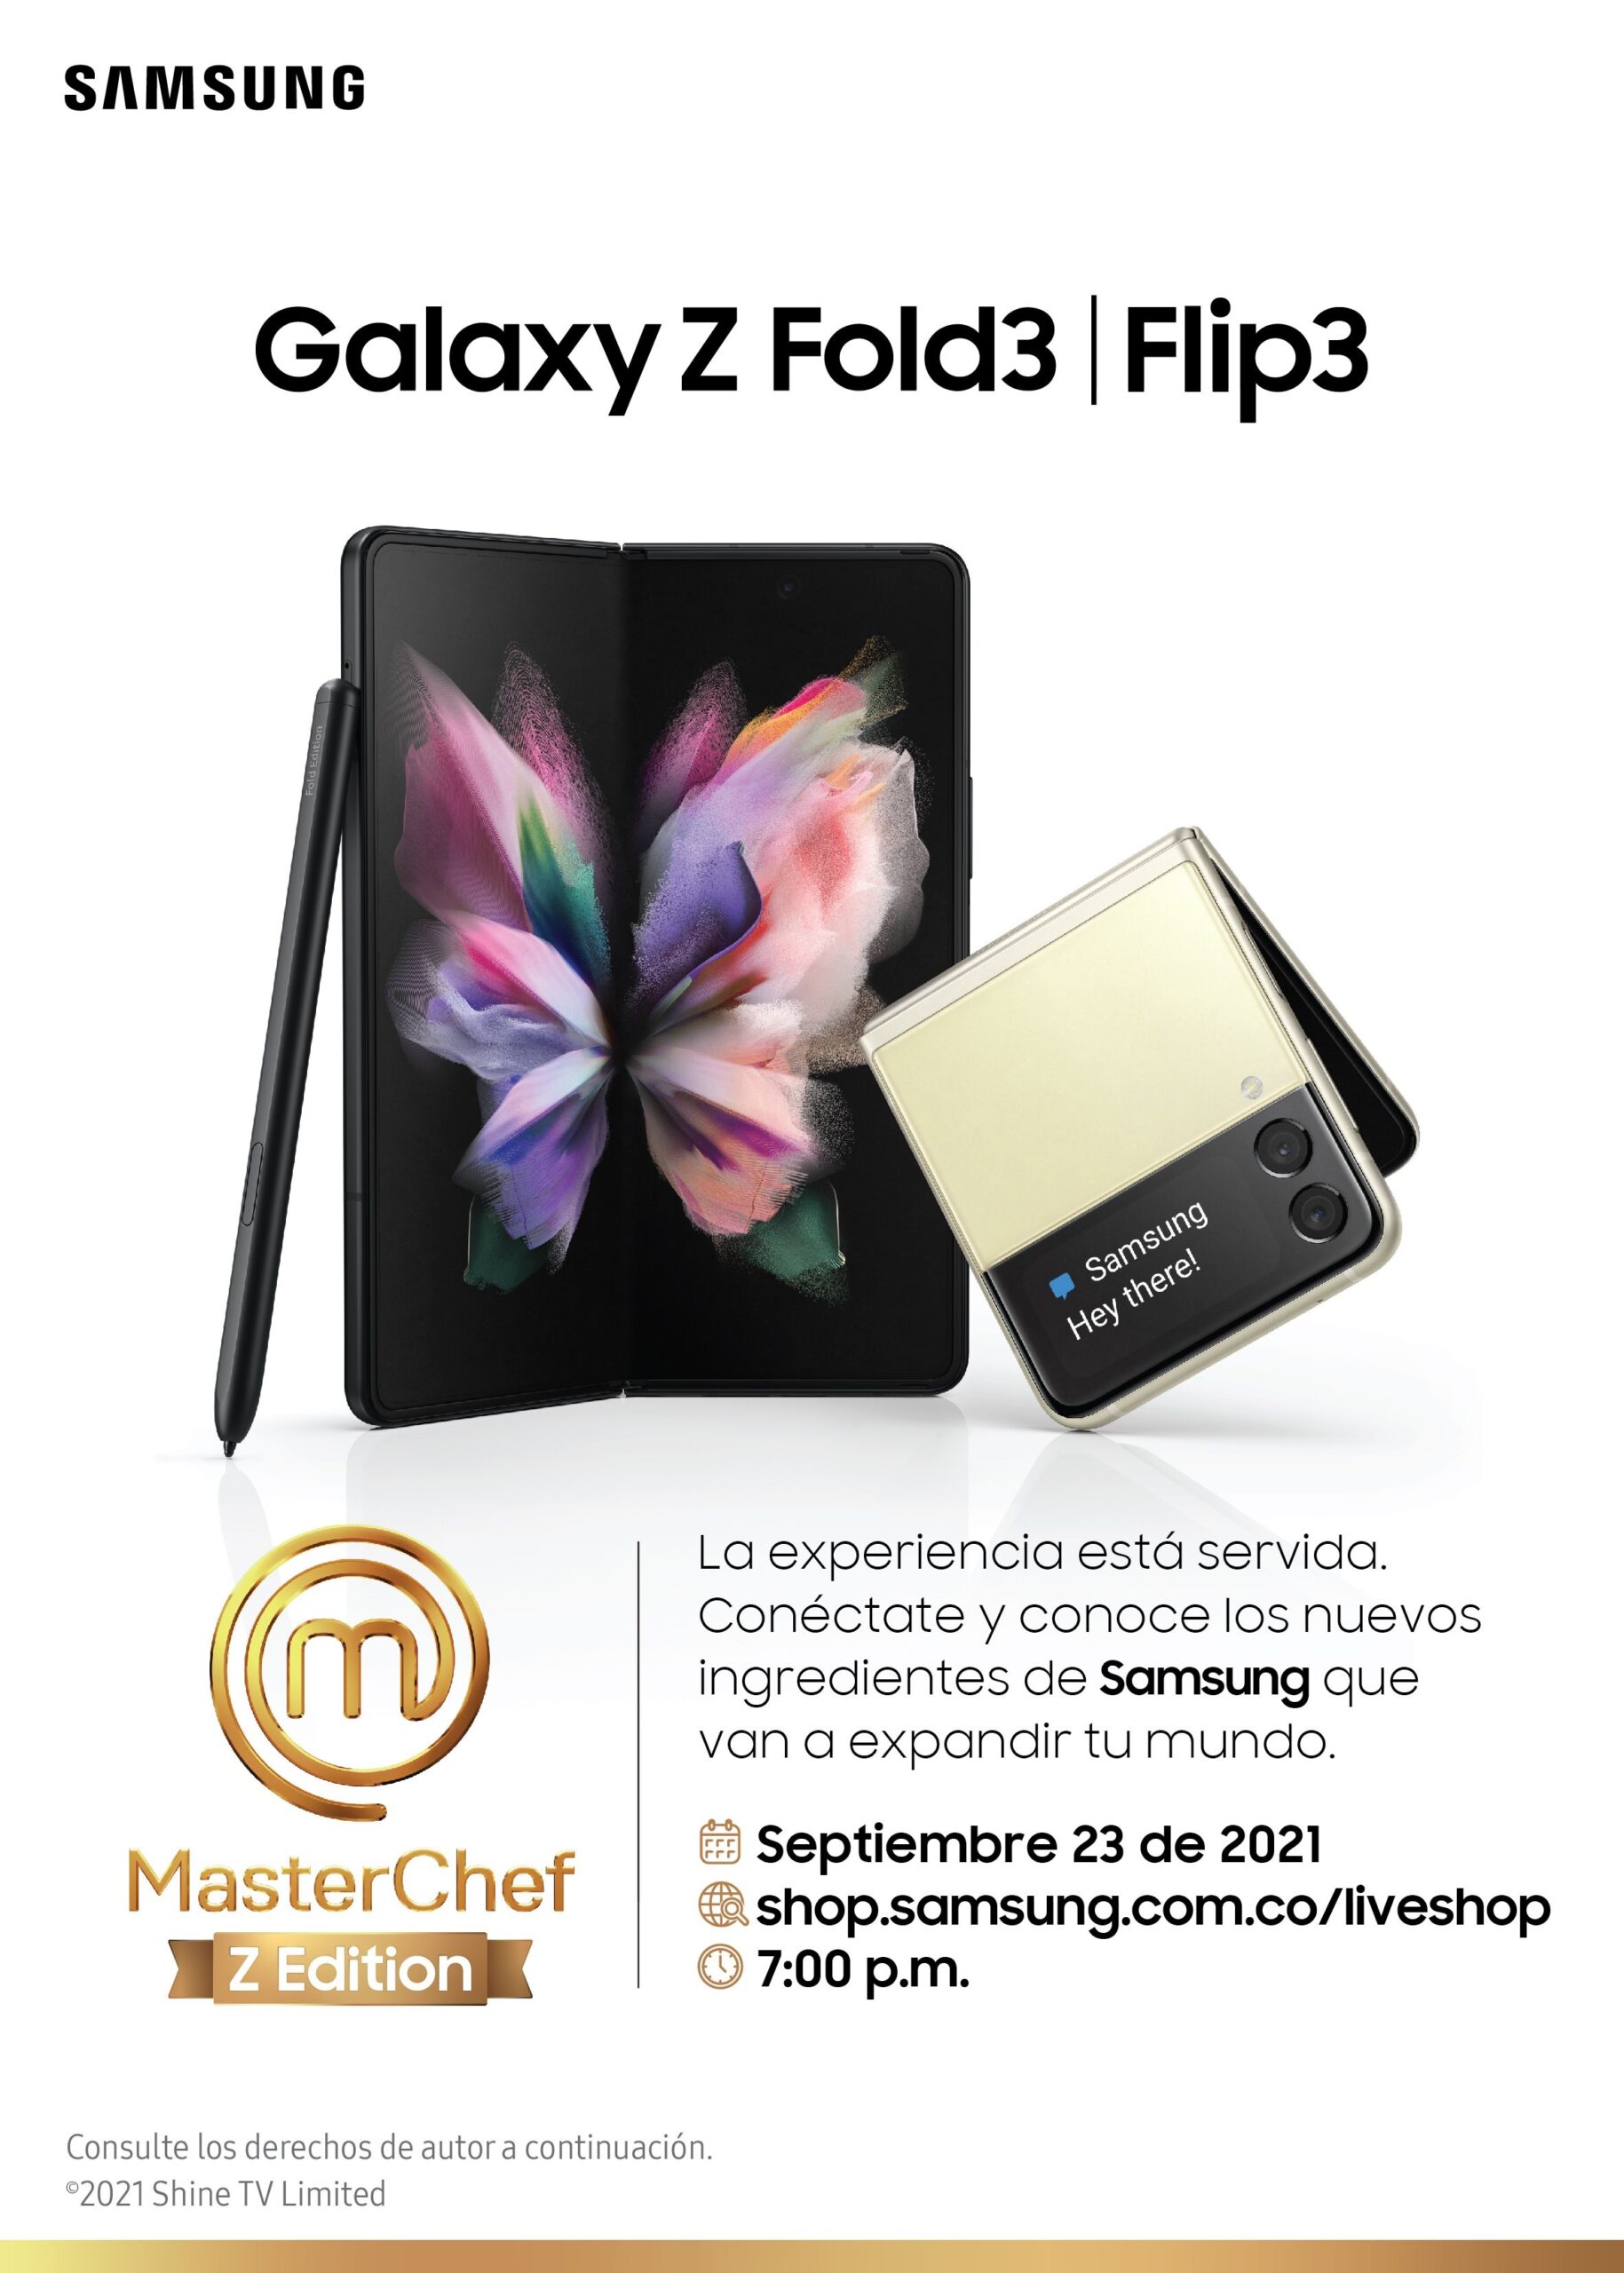 El próximo jueves 23 de septiembre, a las 7:00 p.m. Samsung Colombia presentará los nuevos dispositivos de la Serie Galaxy Z